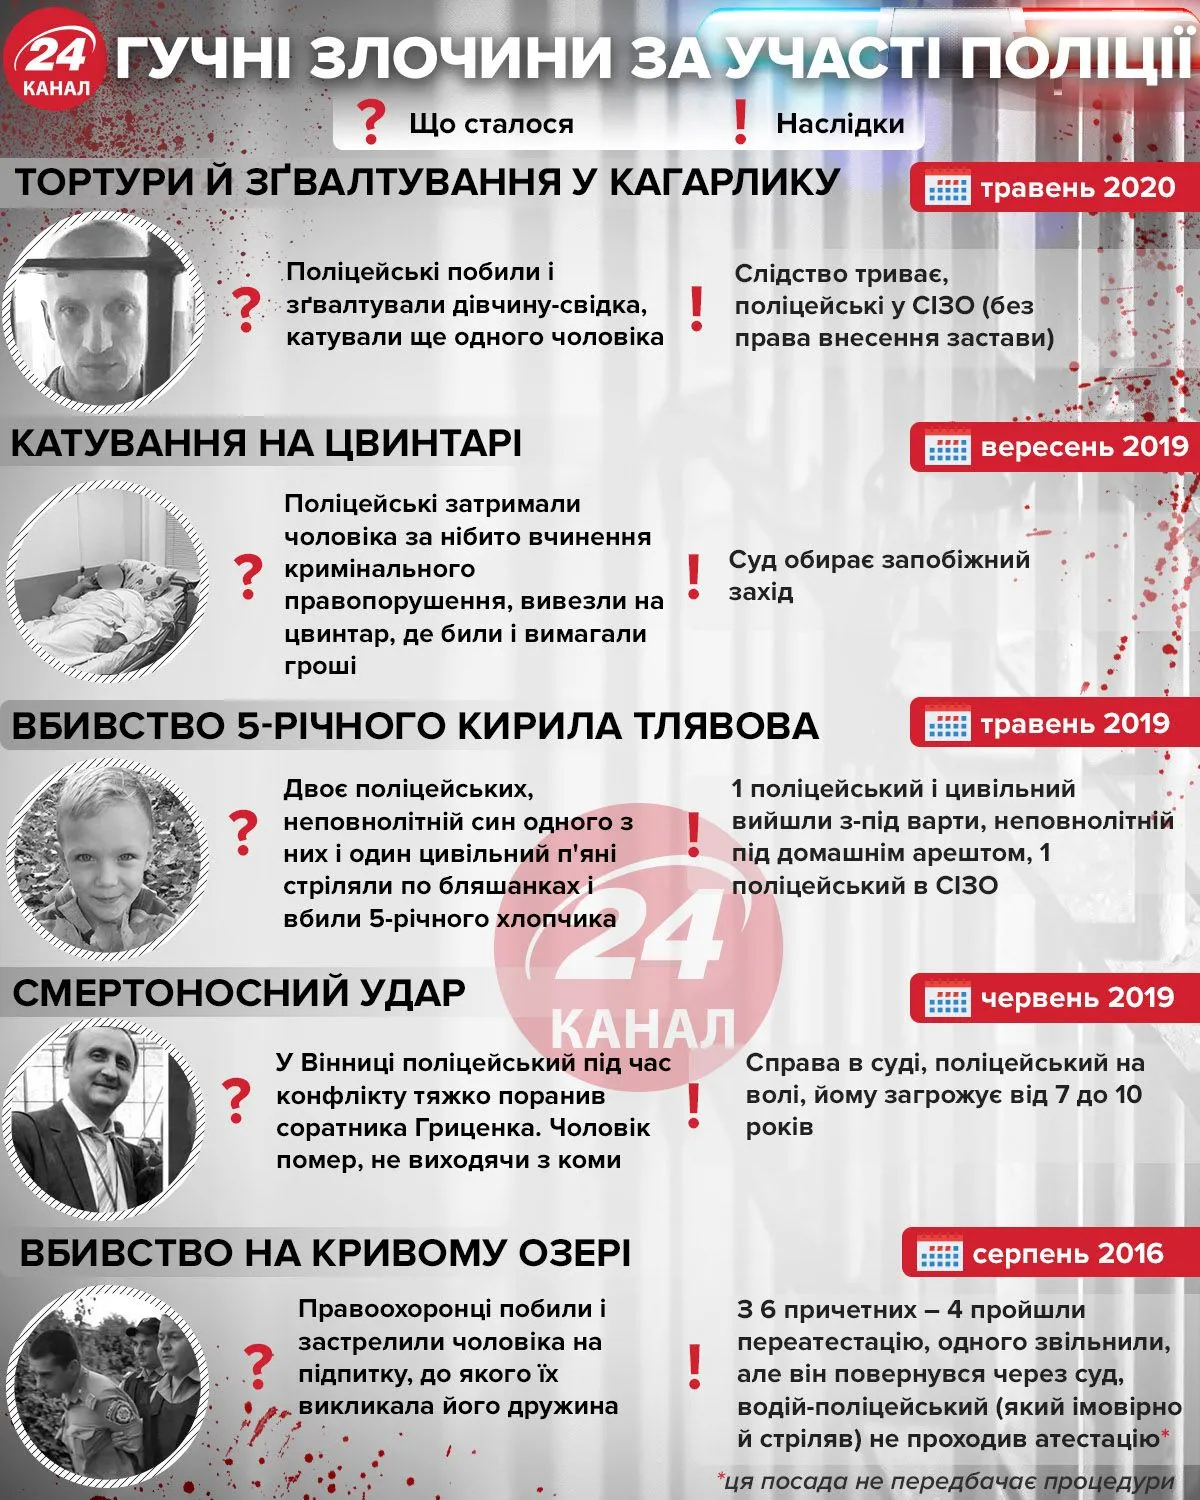 Гучні злочини за участі поліції інфографіка 24 канал